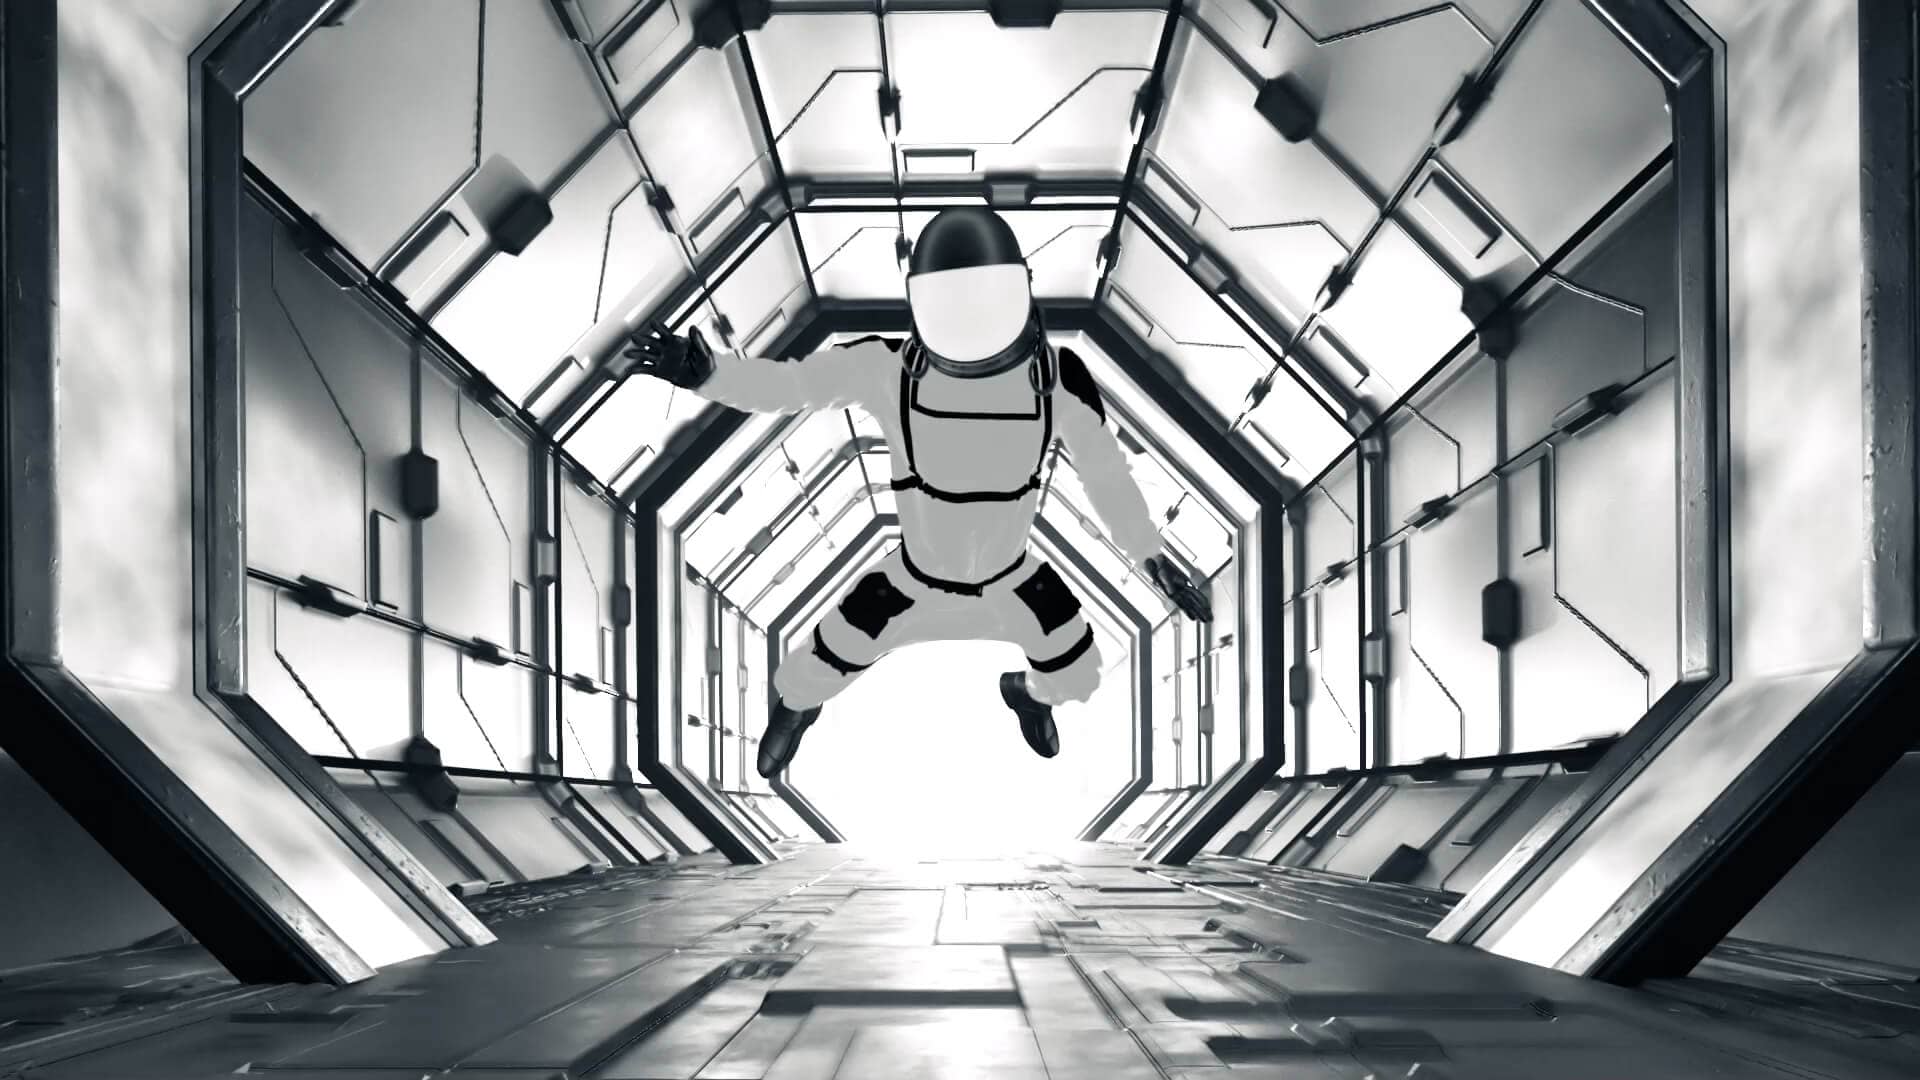 Floating in spaceship vj loop by Crazy Artist. Descubre el astronauta flotando a través de la nave espacial.